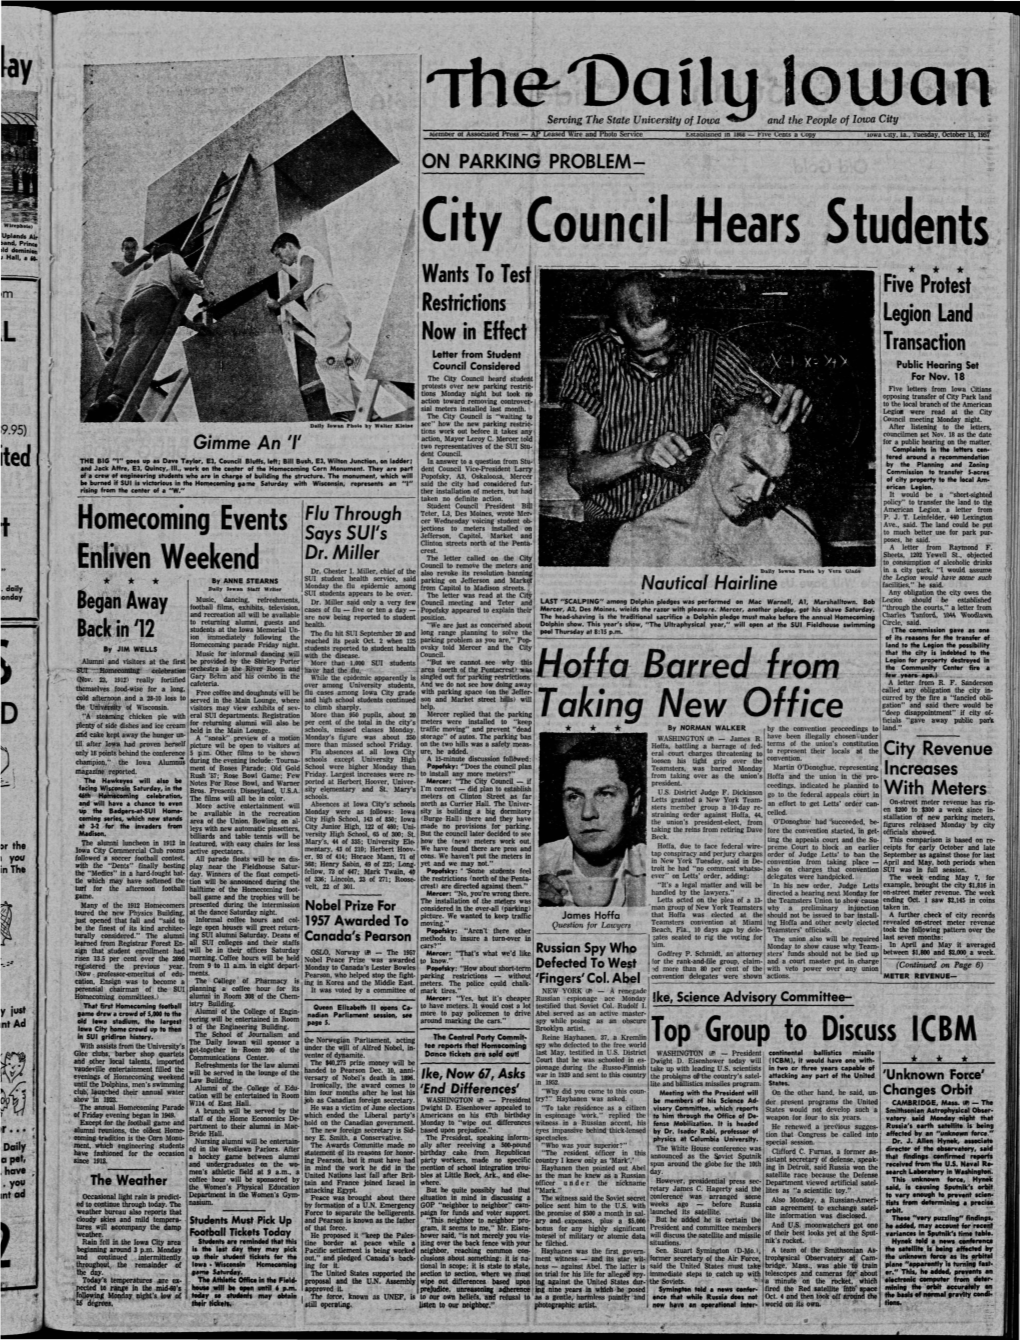 Daily Iowan (Iowa City, Iowa), 1957-10-15